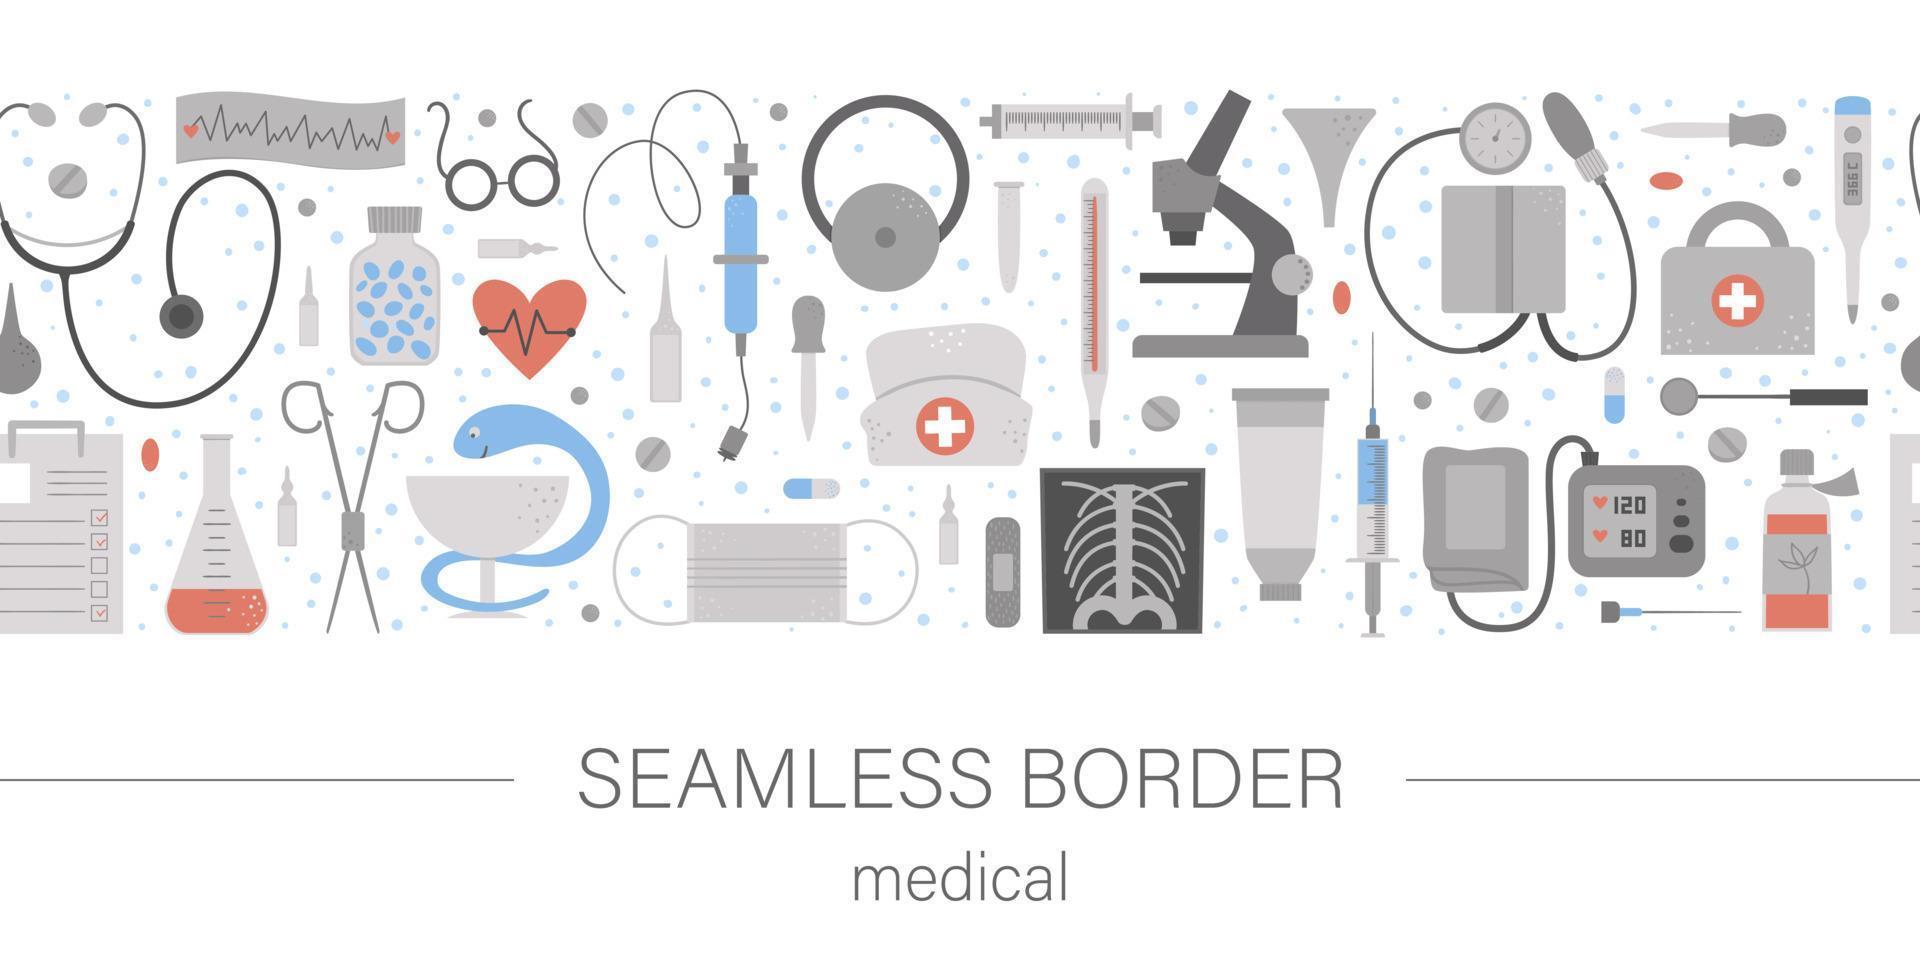 Vektor nahtlose Musterpinsel mit flachen medizinischen Symbolen. medizin oder krankenversicherung, forschungsgrenzhintergrund. Horizontales digitales Papier für Gesundheits- und Laborgeräte.